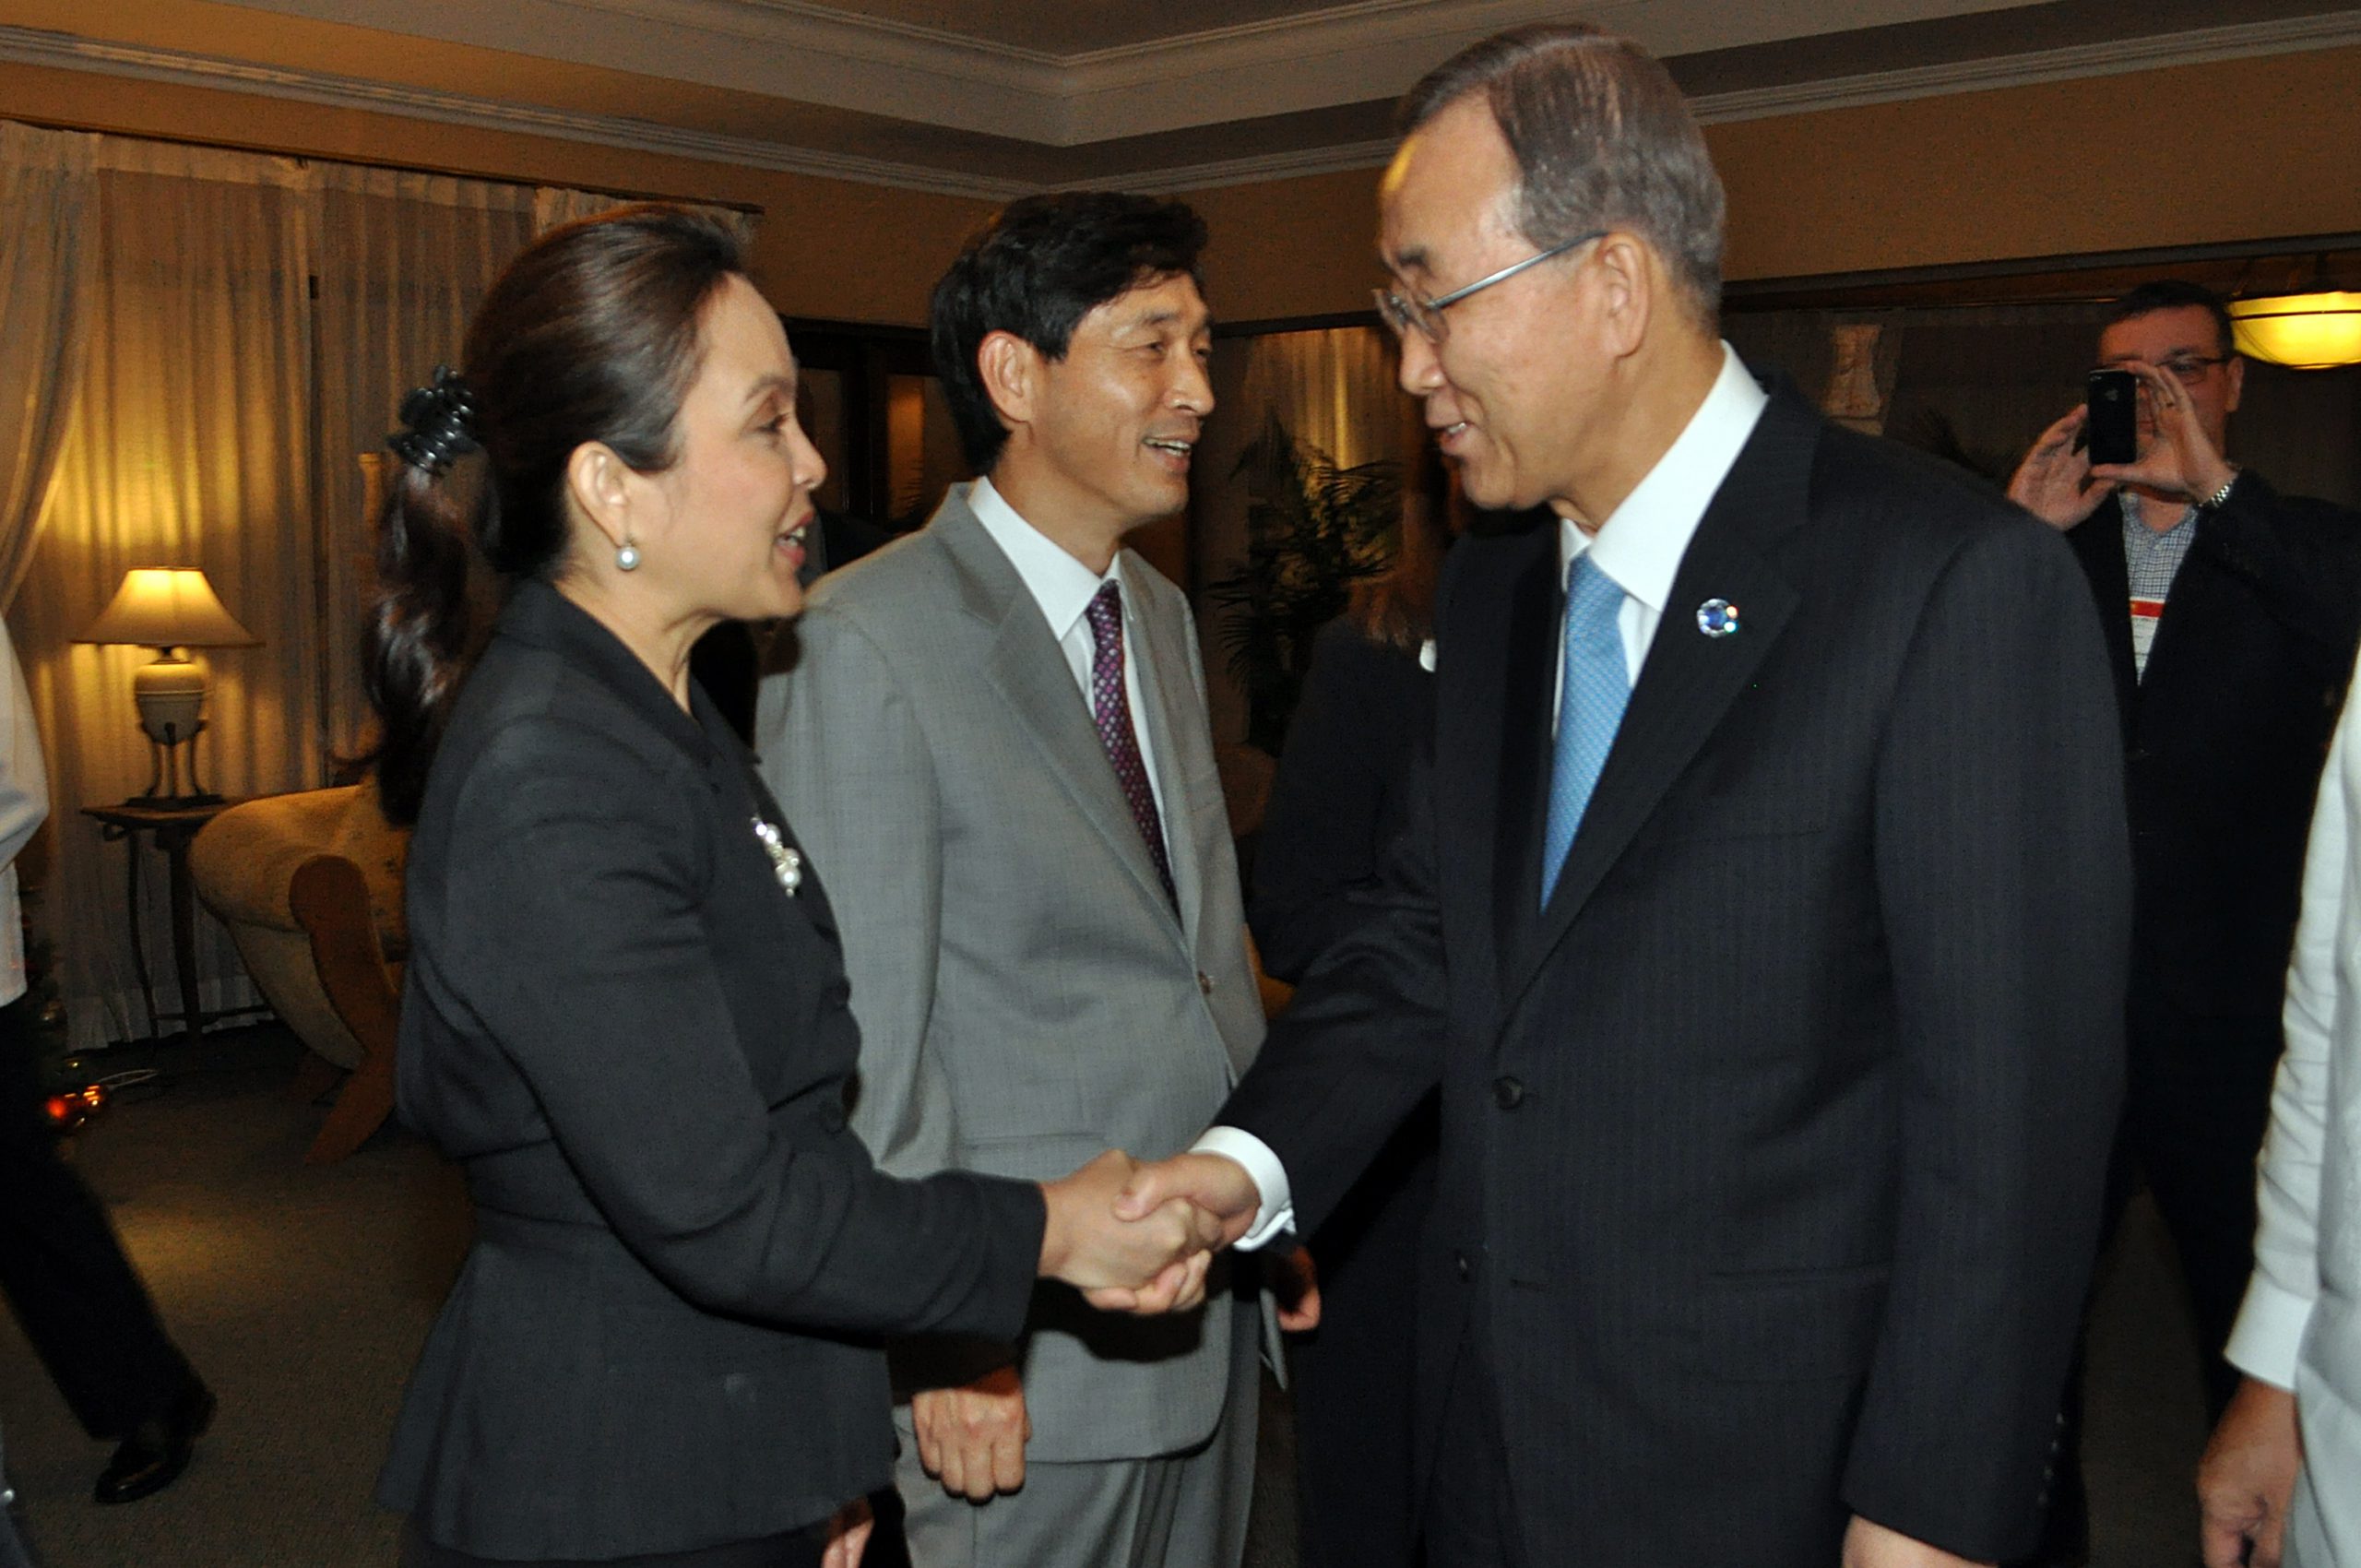 Legarda Meets with UN Head Ban Ki-moon